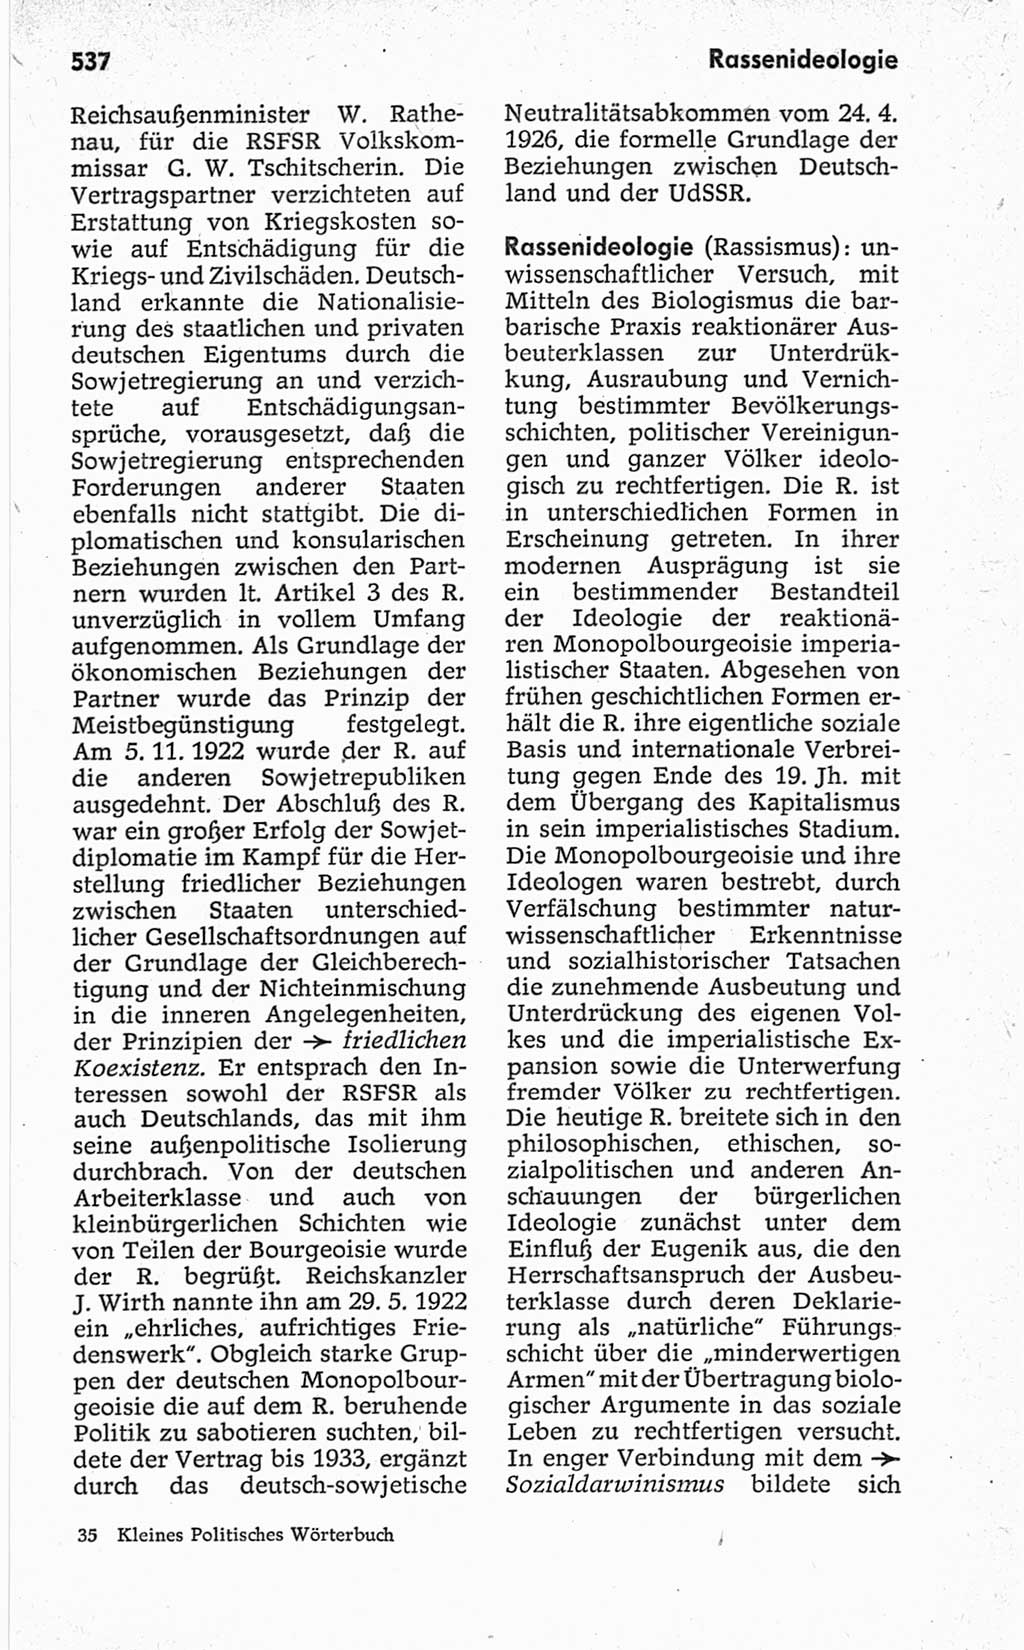 Kleines politisches Wörterbuch [Deutsche Demokratische Republik (DDR)] 1967, Seite 537 (Kl. pol. Wb. DDR 1967, S. 537)